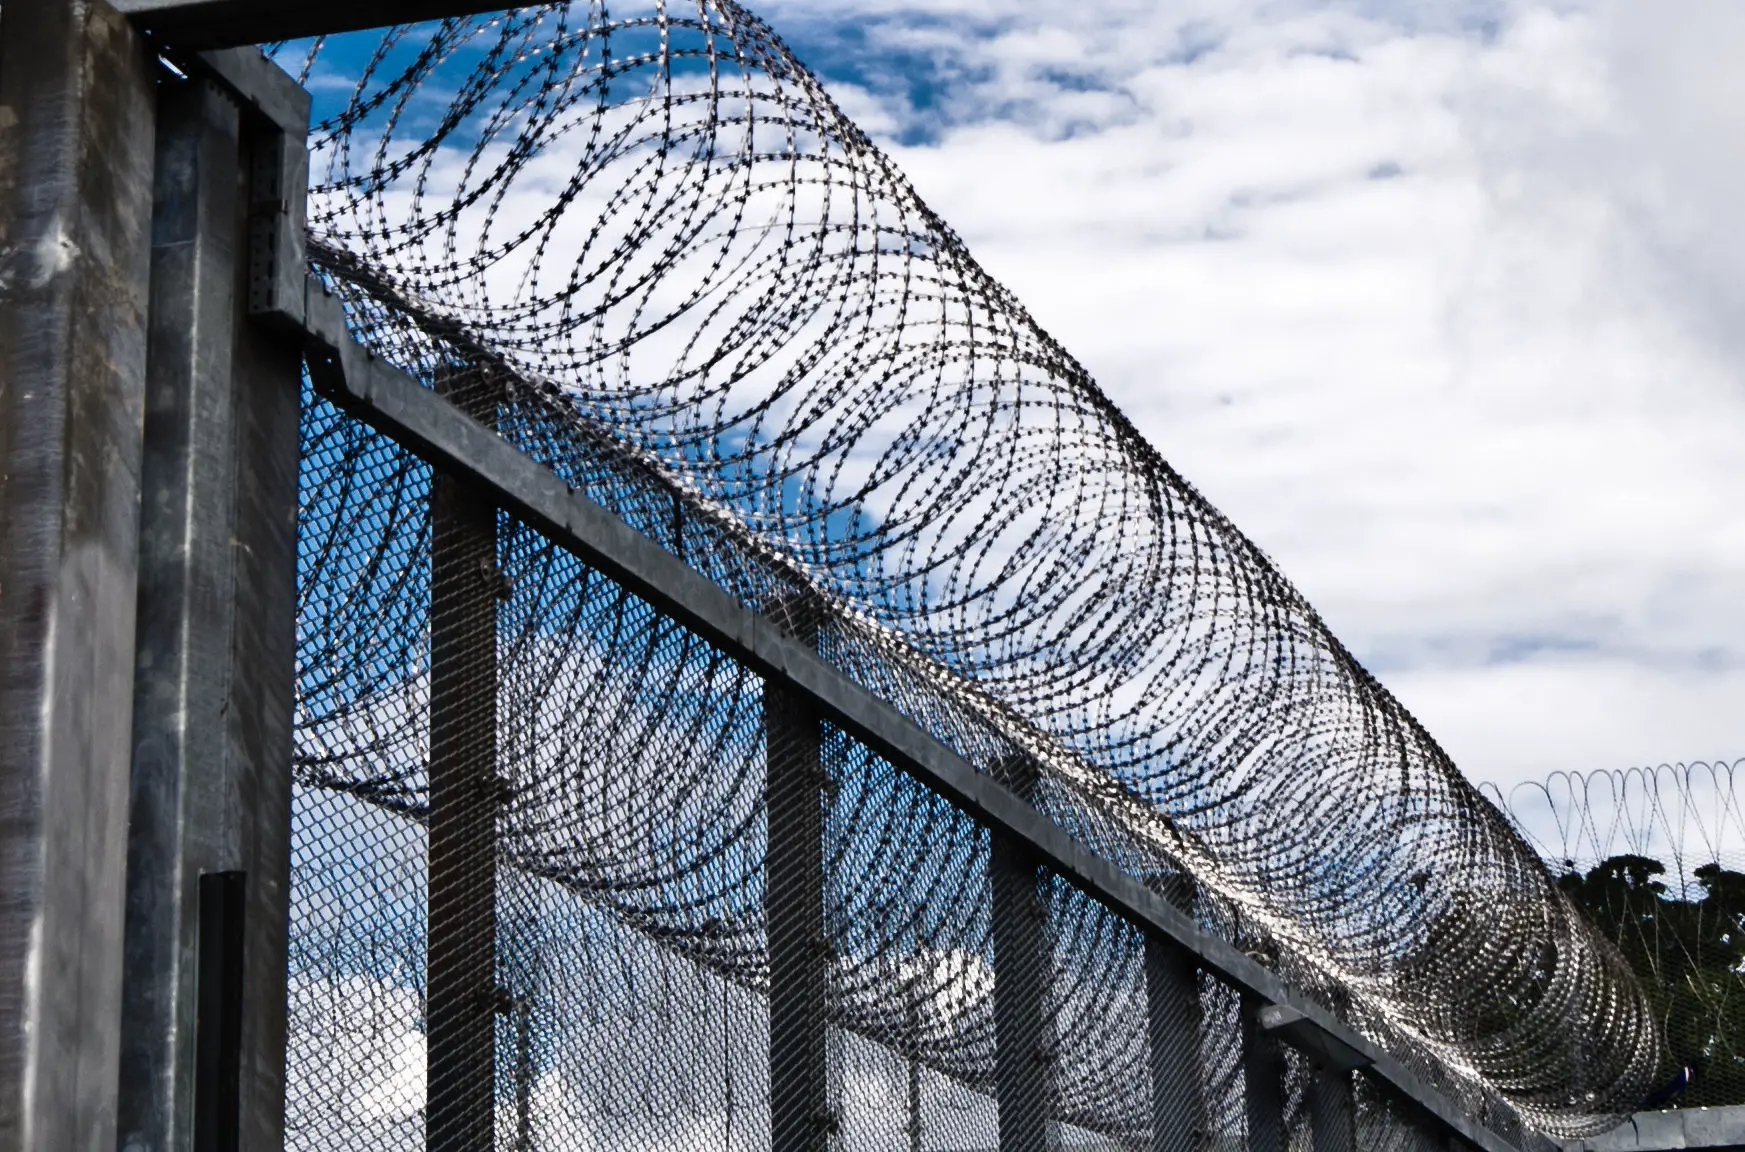 barbed wire around prison walls